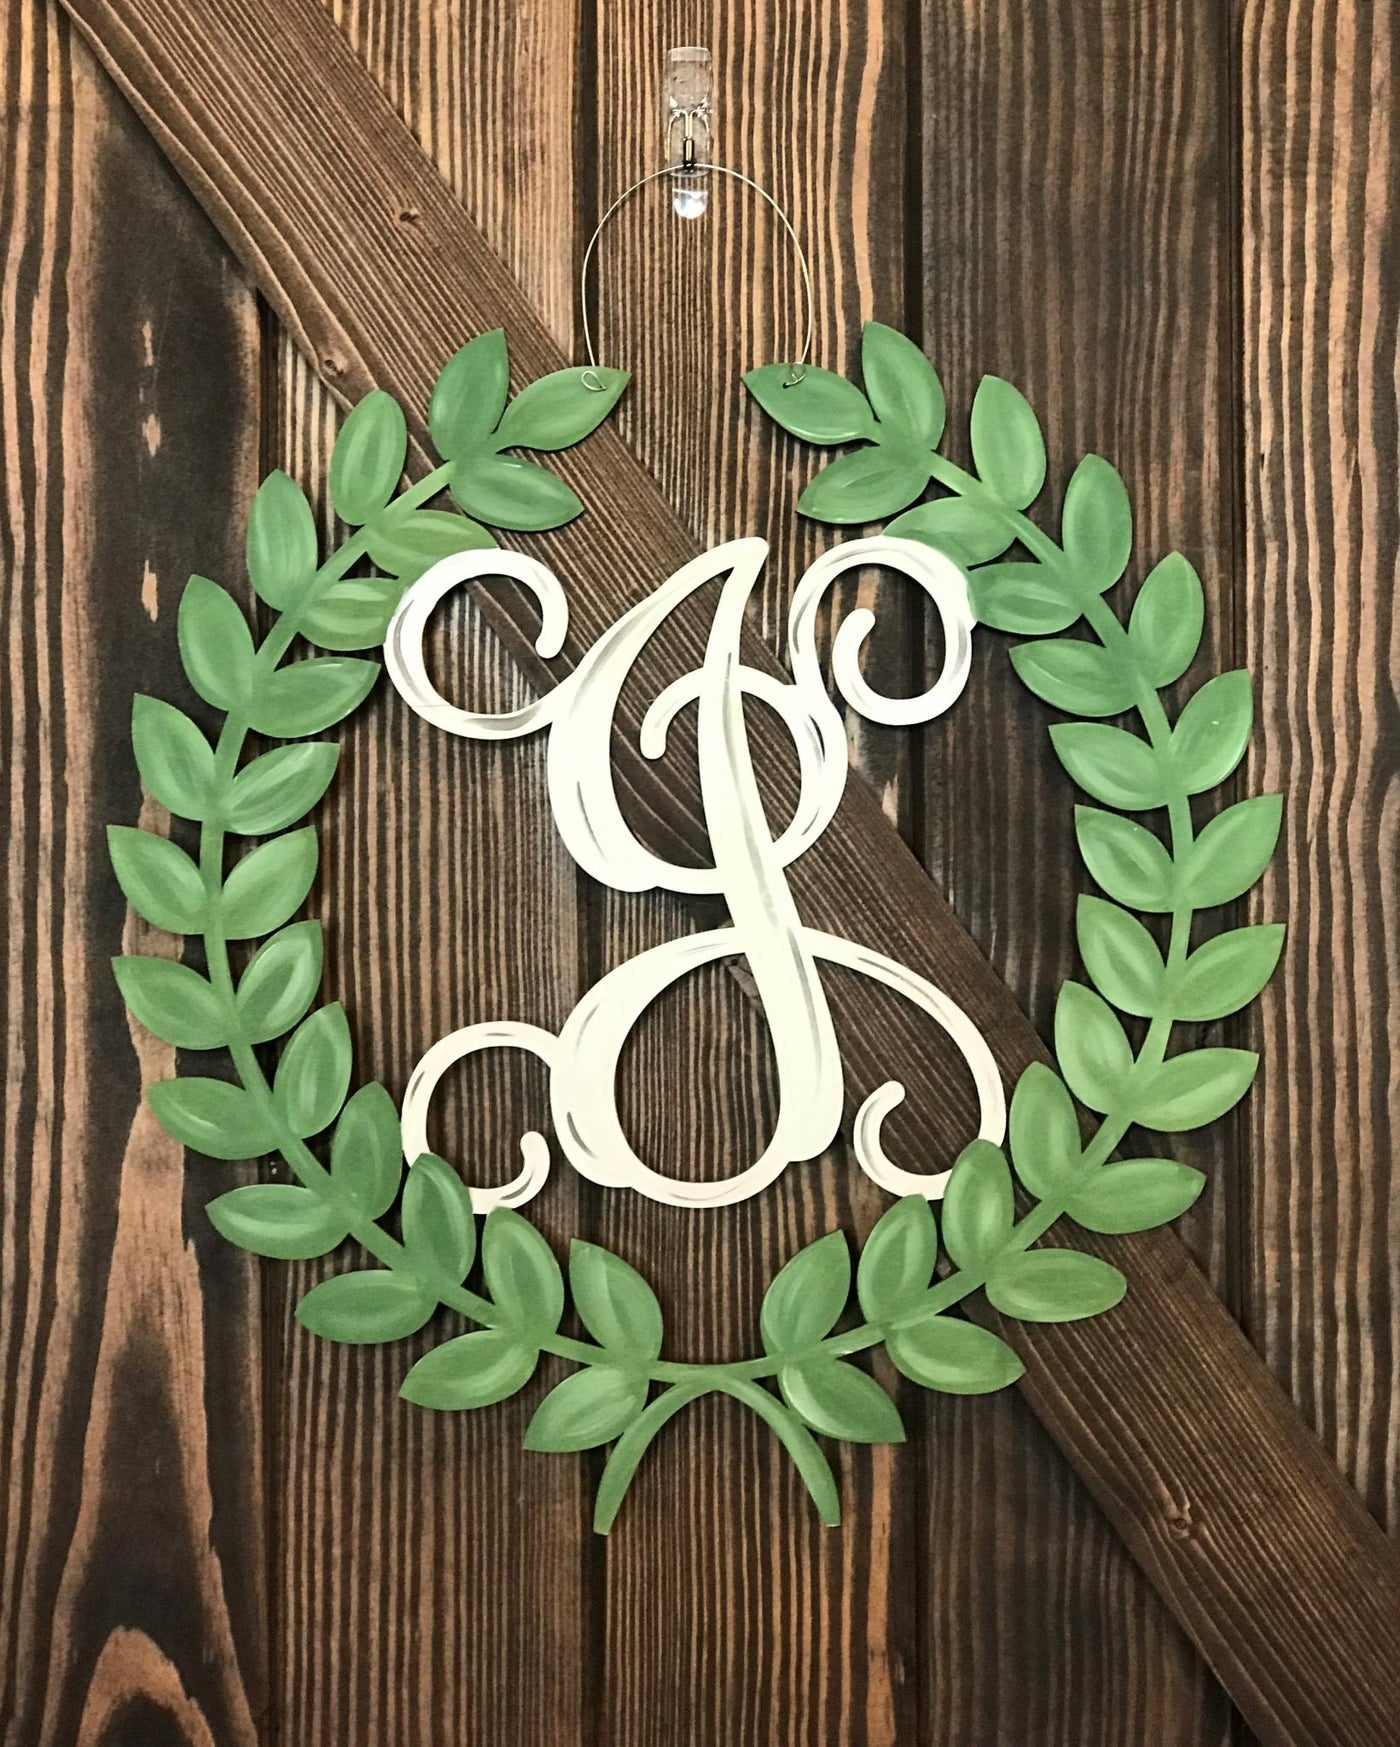 7/13/19 Door Hanger Workshop @ 1:00Pm Wreath With Initial